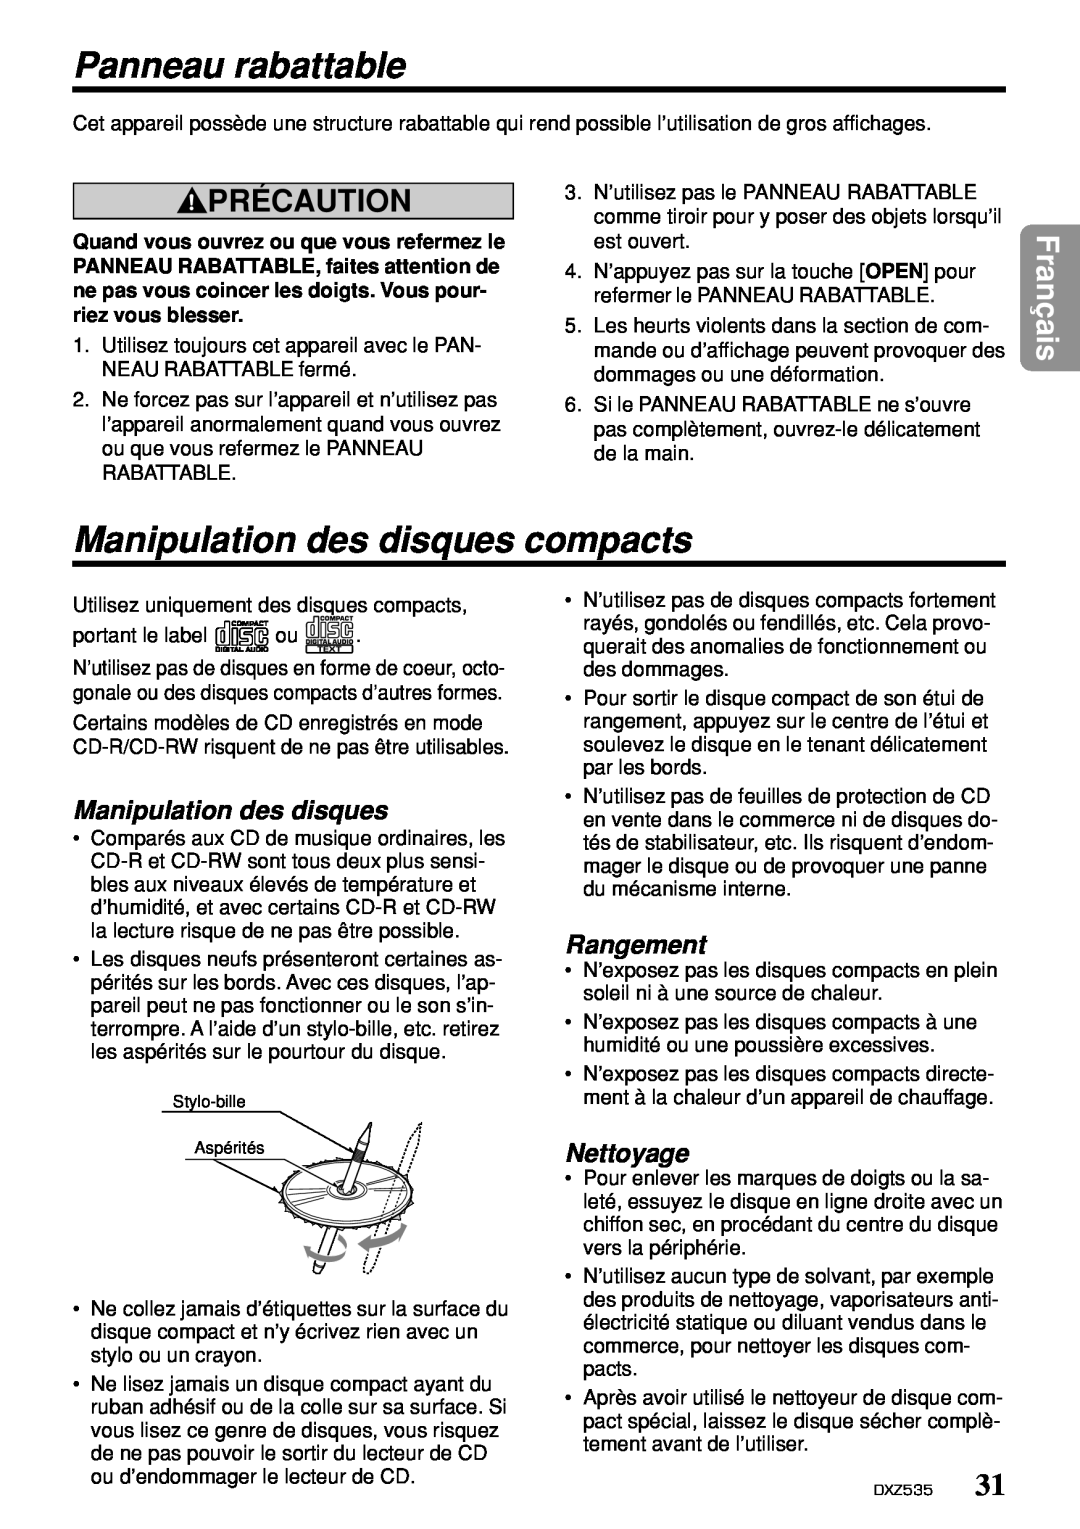 Clarion DXZ535 Panneau rabattable, Manipulation des disques compacts, Rangement, Nettoyage, Précaution, Français 